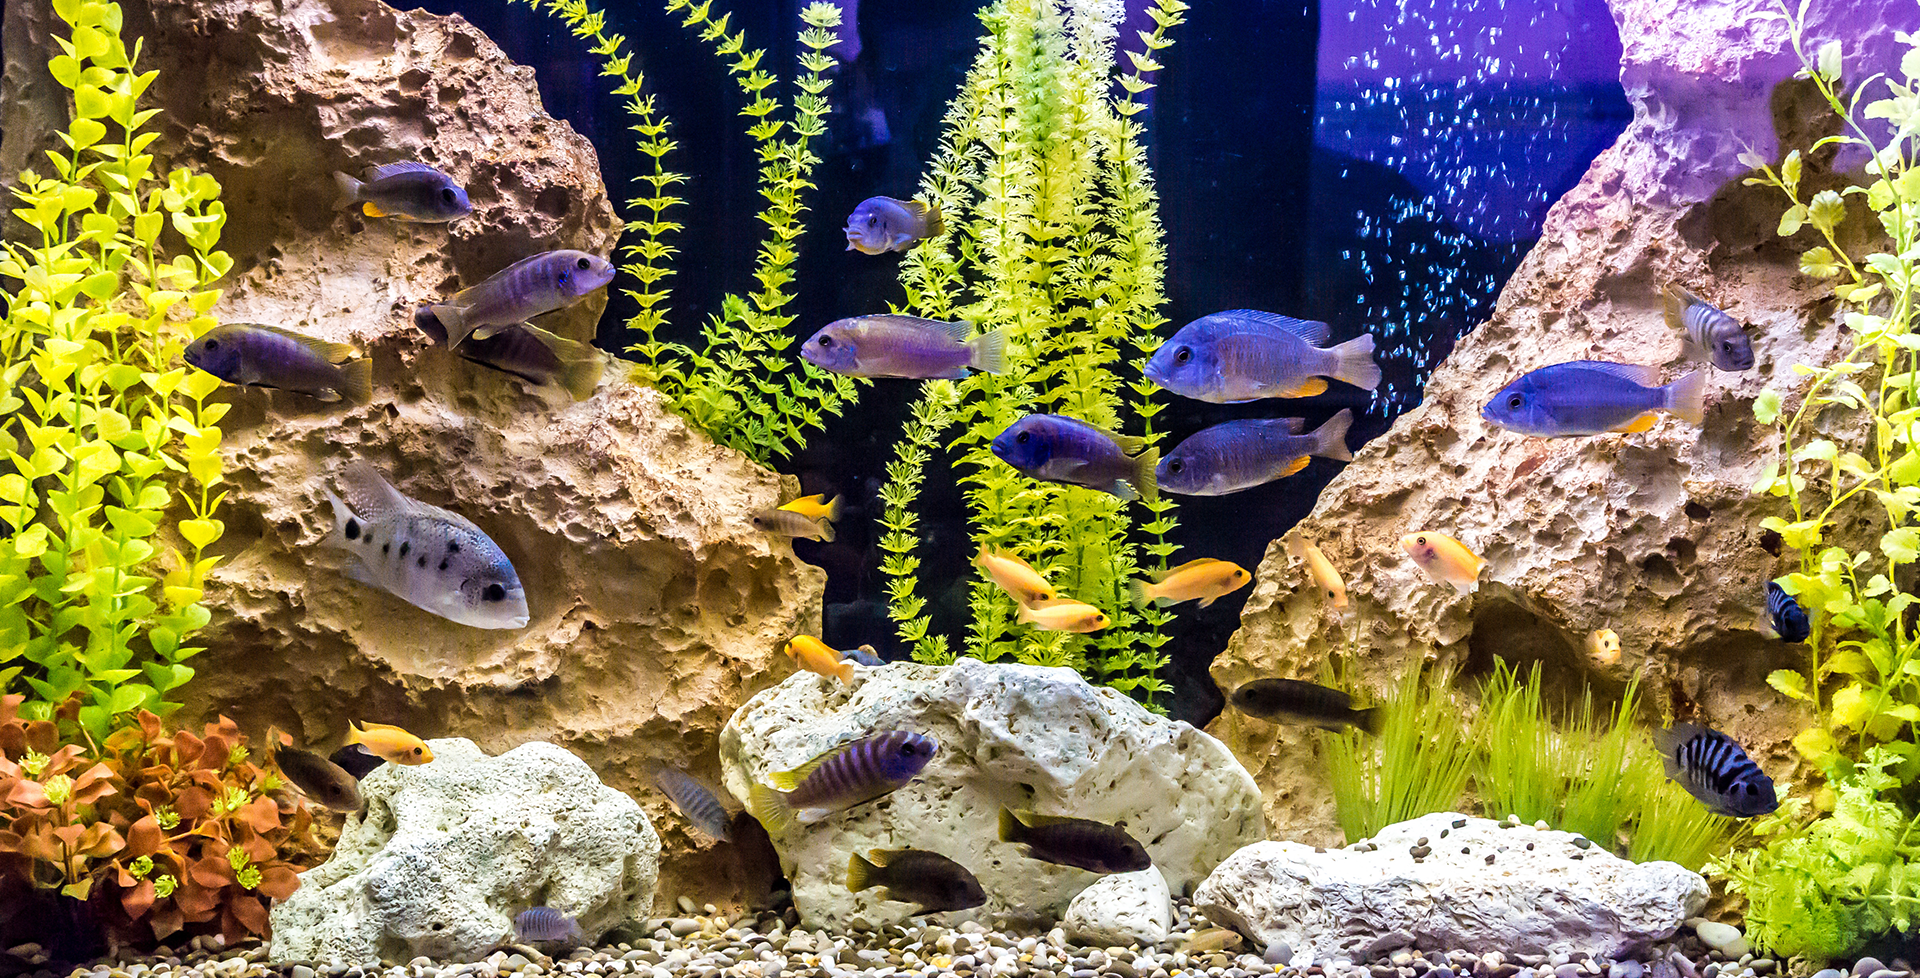 Streifenfreies Aquarium: So wird das Fisch-Häuschen blitzeblank